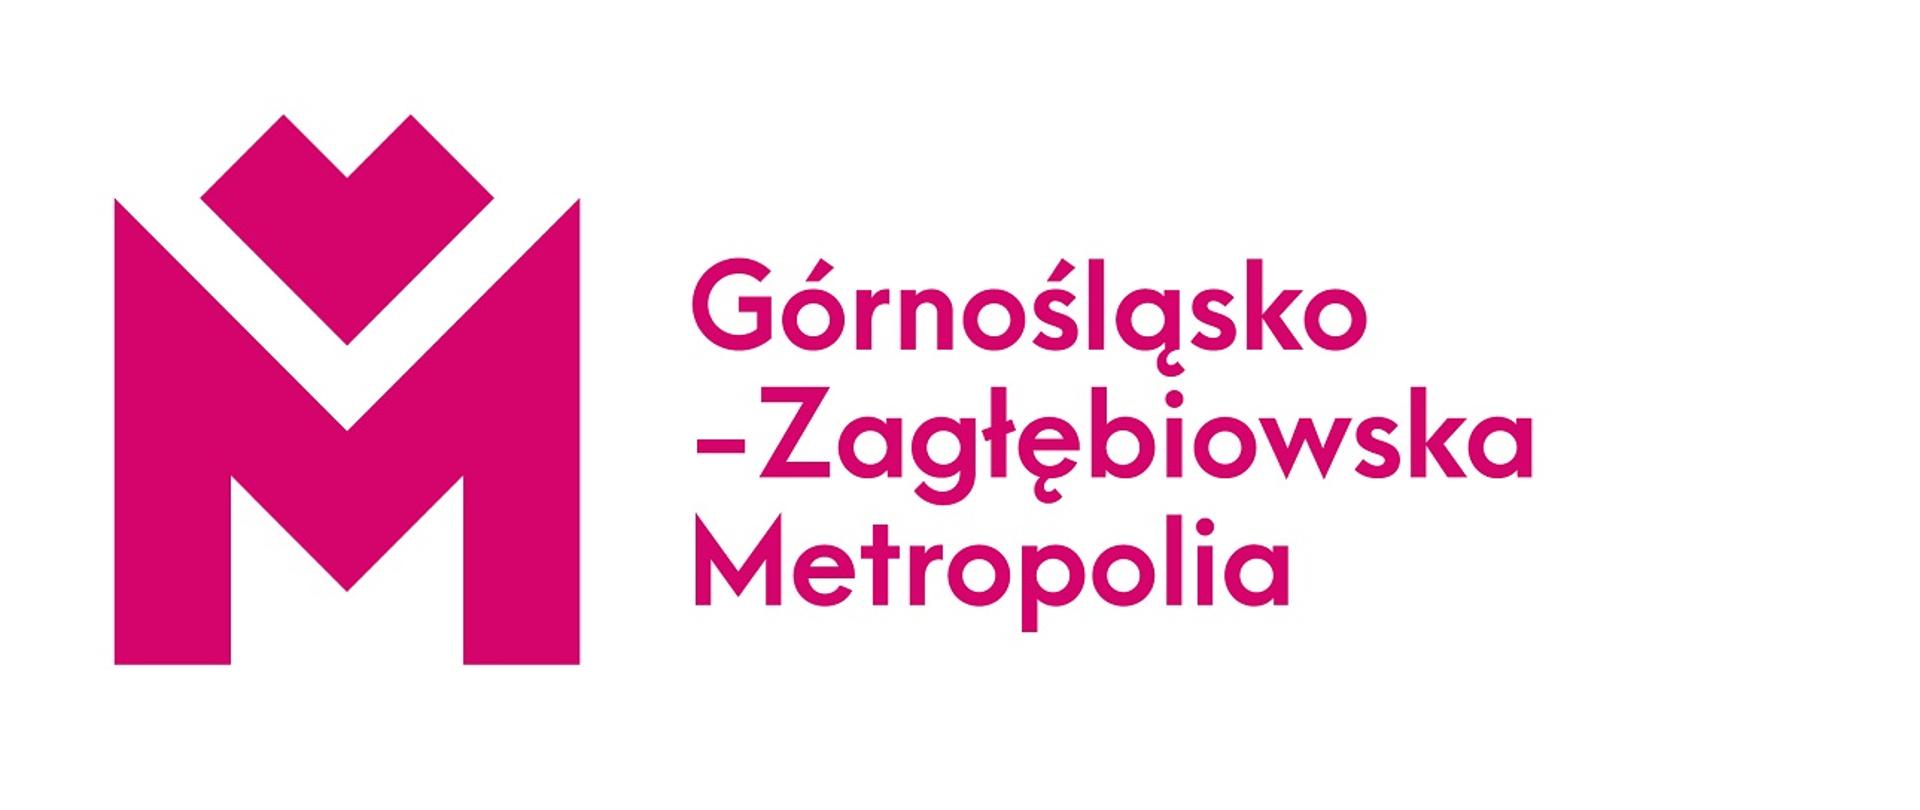 Projekt współfinansowany przez Górnośląsko-Zagłębiowską Metropolię